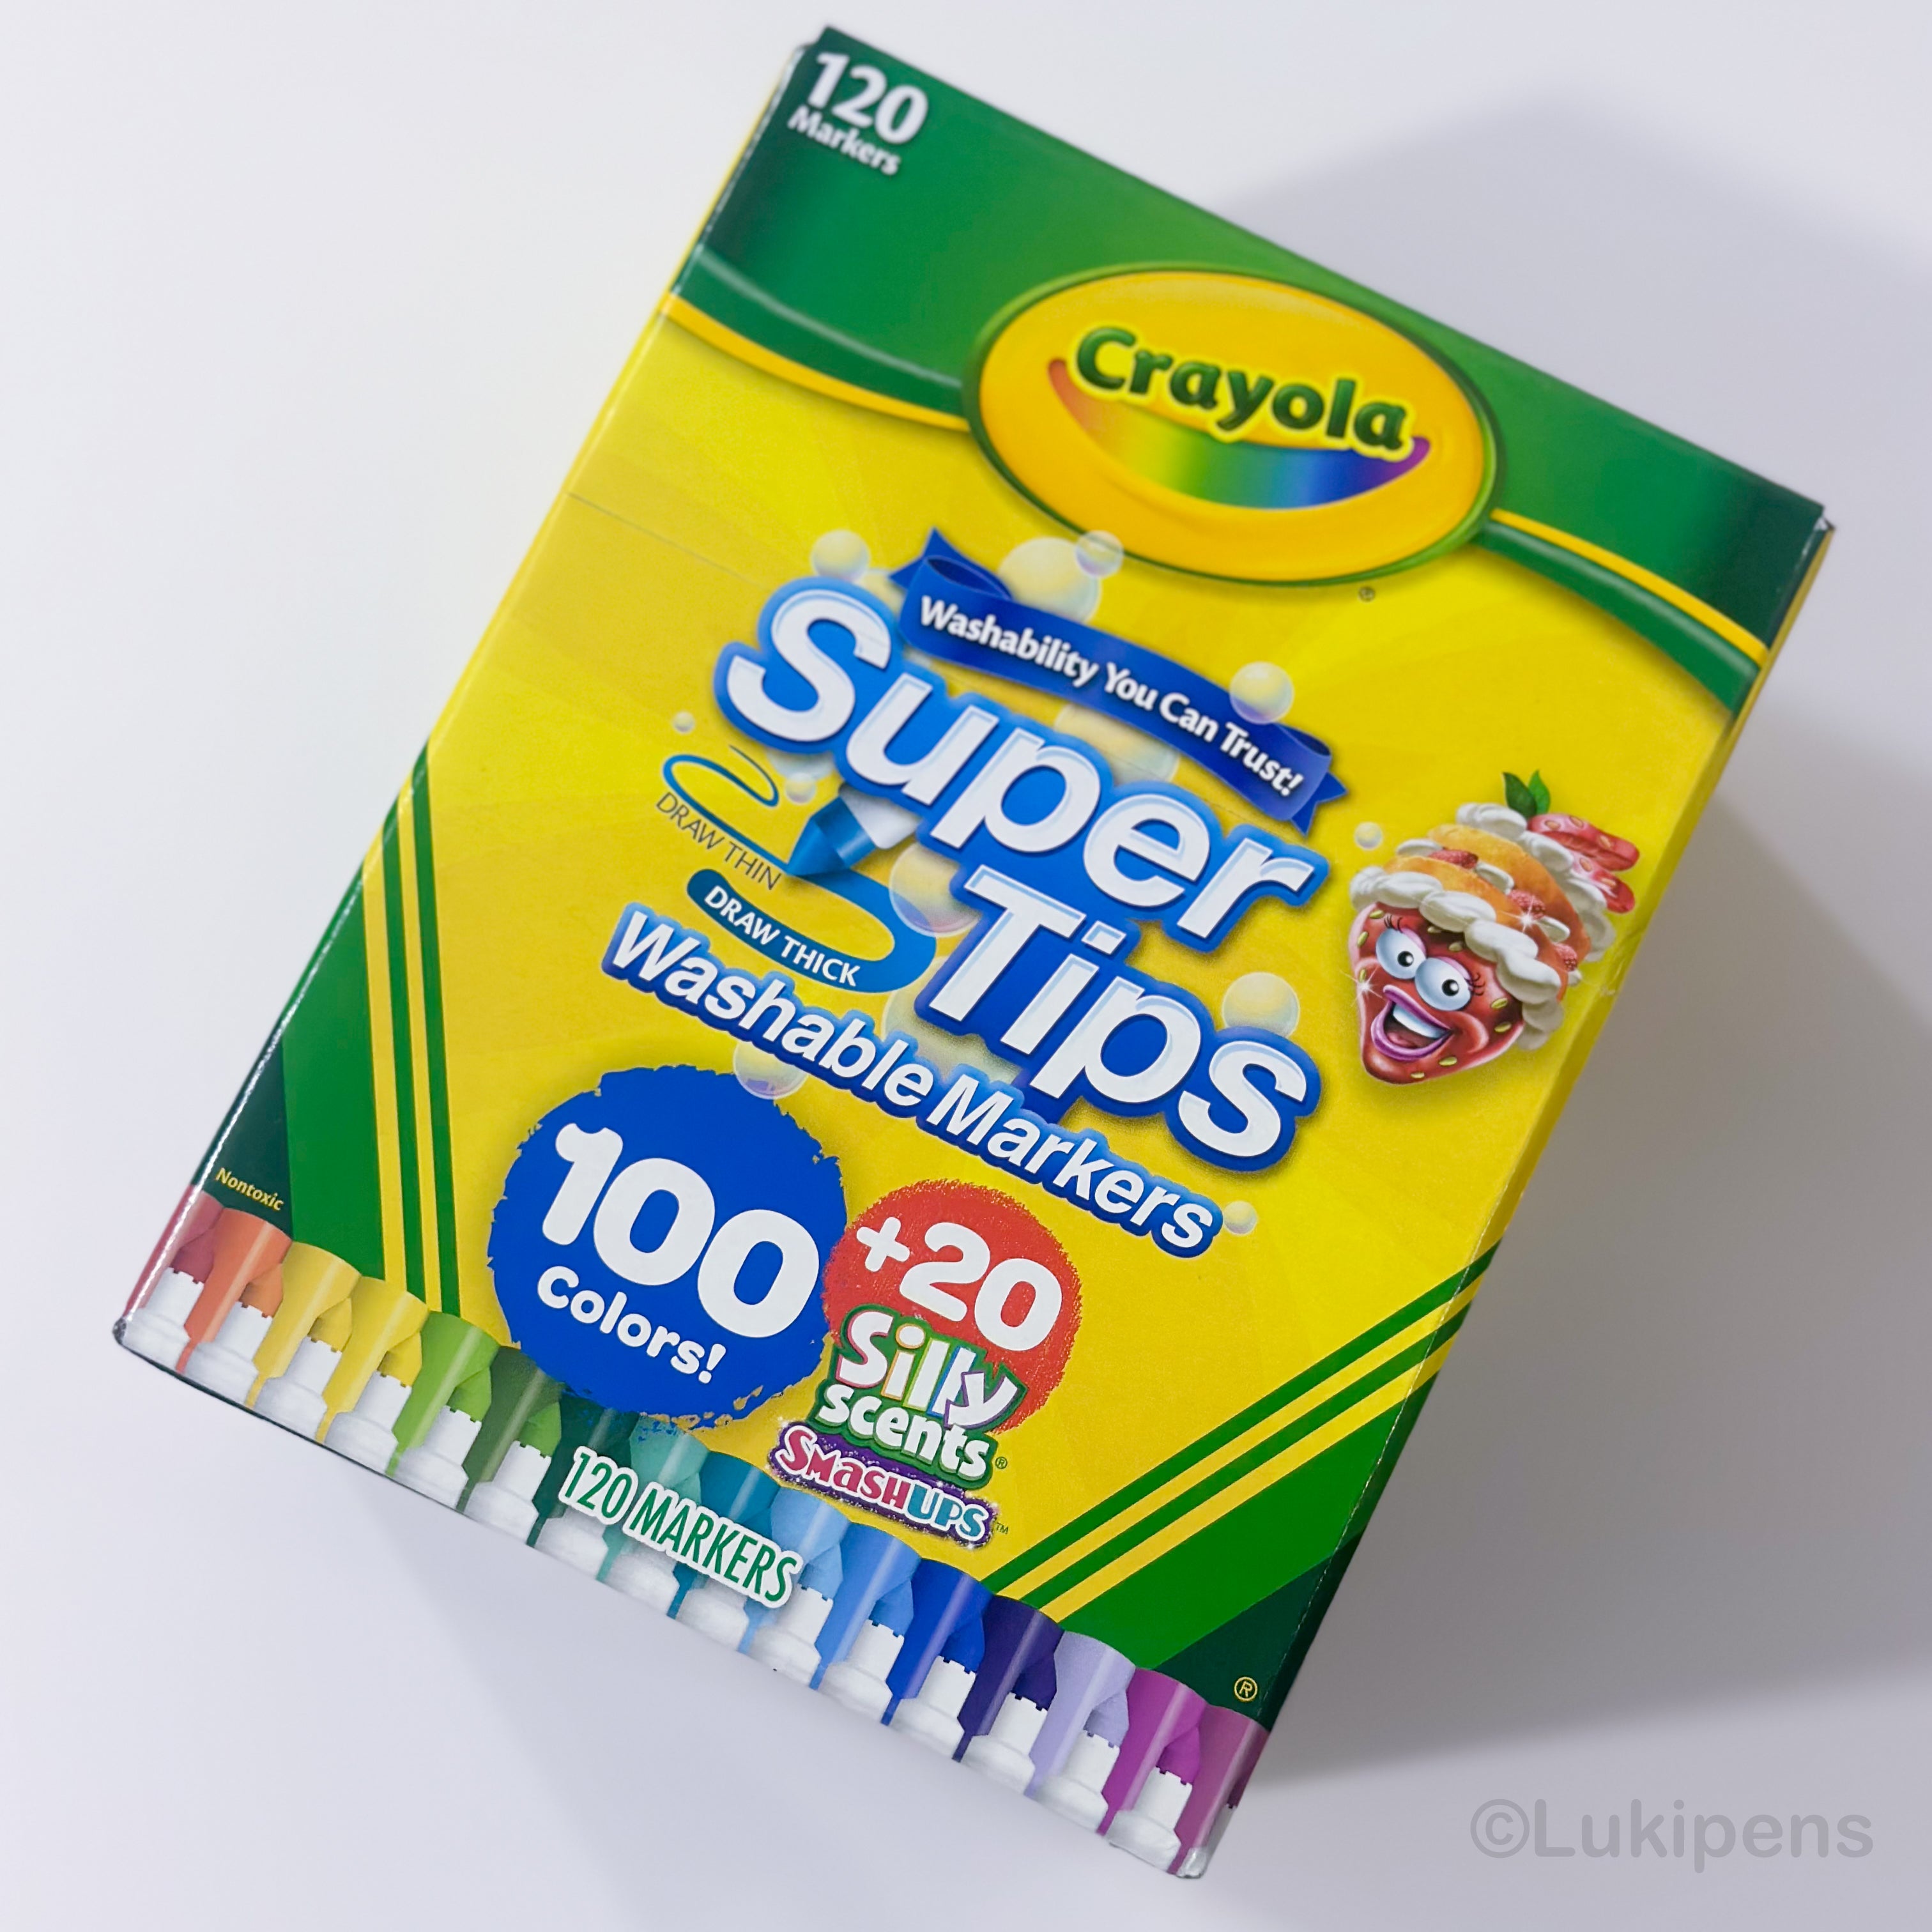 Marcadores lavables Crayola Super tips de 100 unidades + 20 silly scents